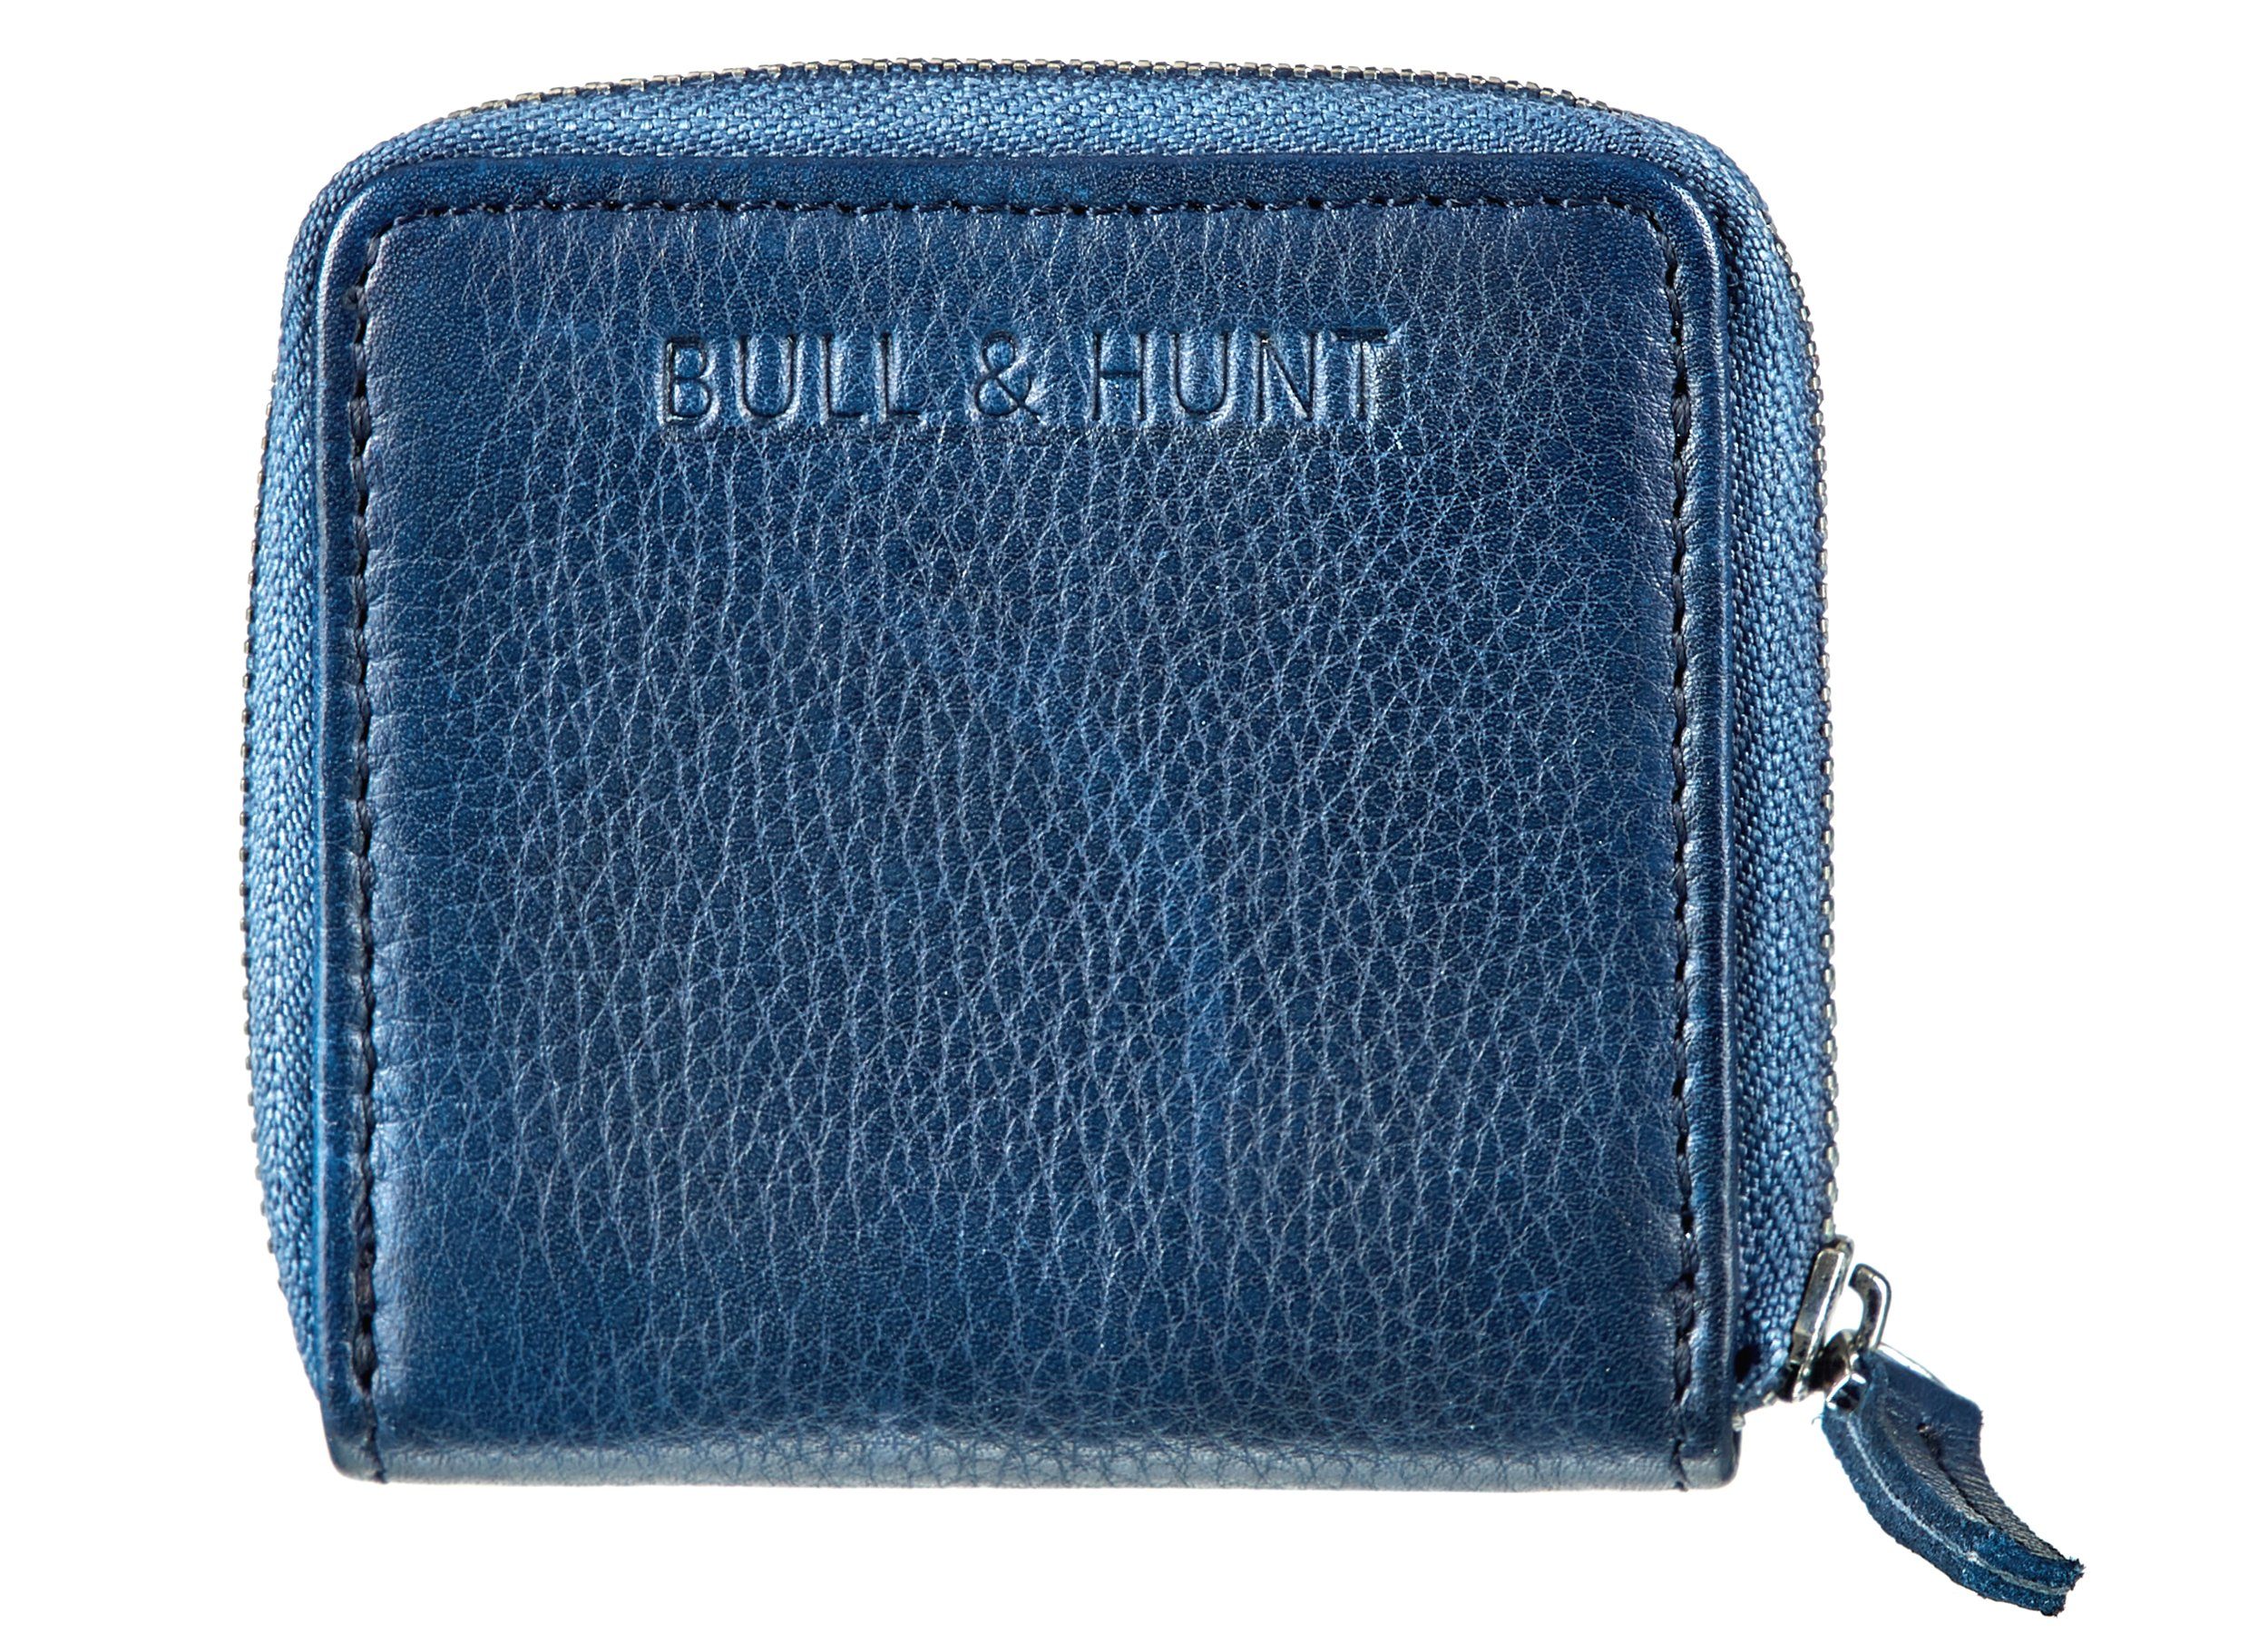 Bull & Hunt Mini Geldbörse mini zip wallet blue